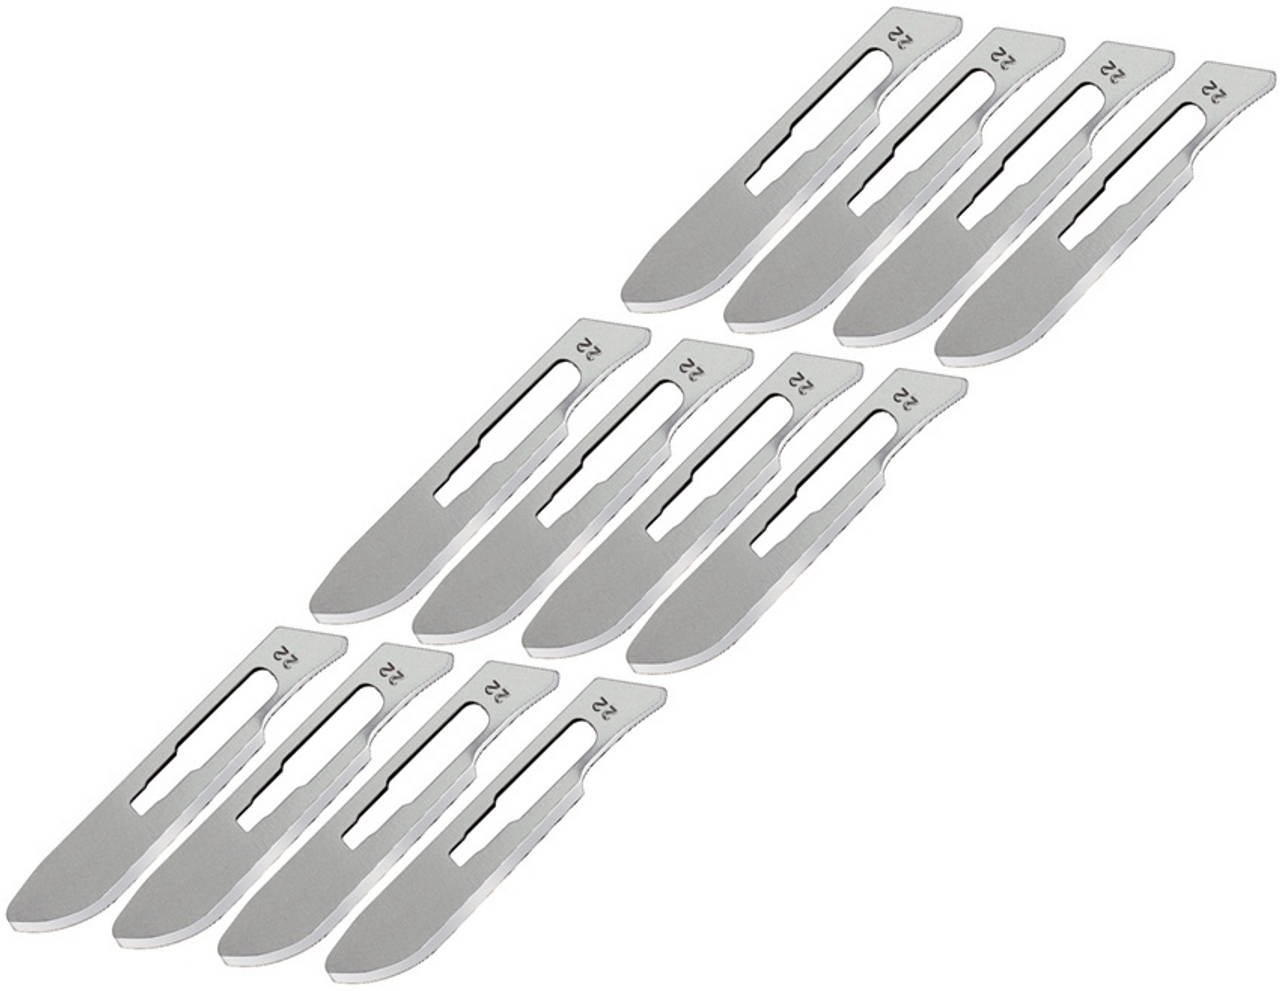 Havalon HV22XTDZ One Dozen Quik-Change Blades, 2 3/8" Stainless Blades